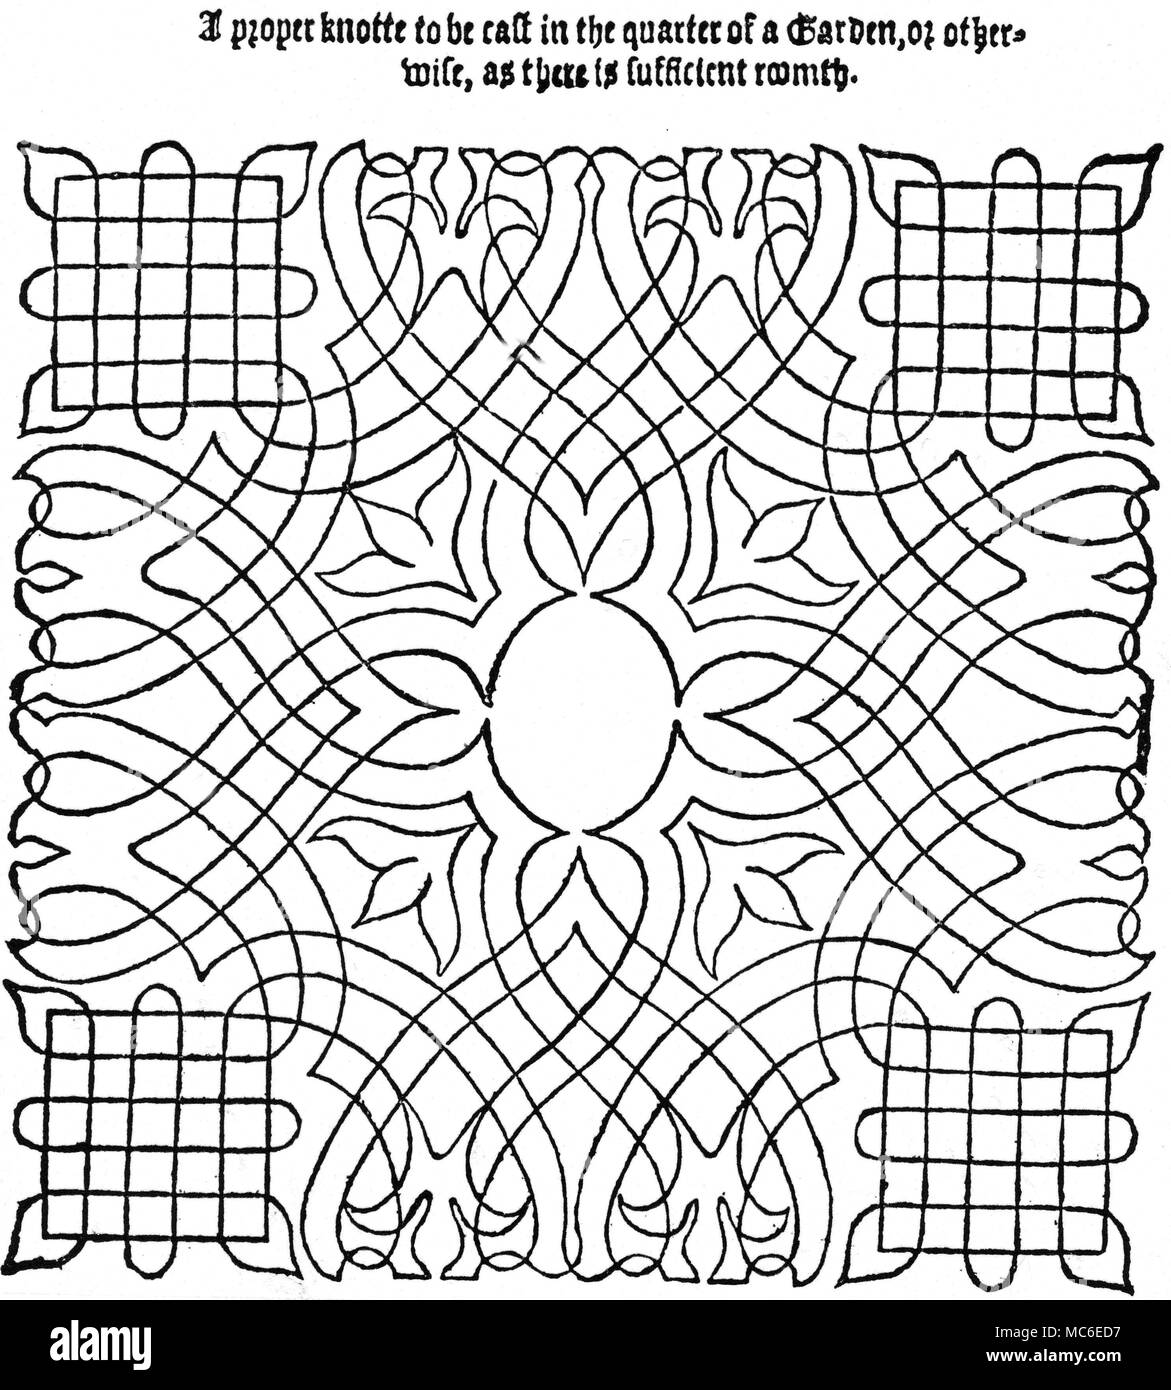 Labyrinthe Plan für ein Labyrinth, oder der richtige Knoten, in einem Garten gepflanzt. Es ist überhaupt nicht klar, wie das Geheimnis auf dem Weg in die Mitte gebaut werden. Von Thomas Hill, des Gärtners Labyrinth, 1577. Stockfoto